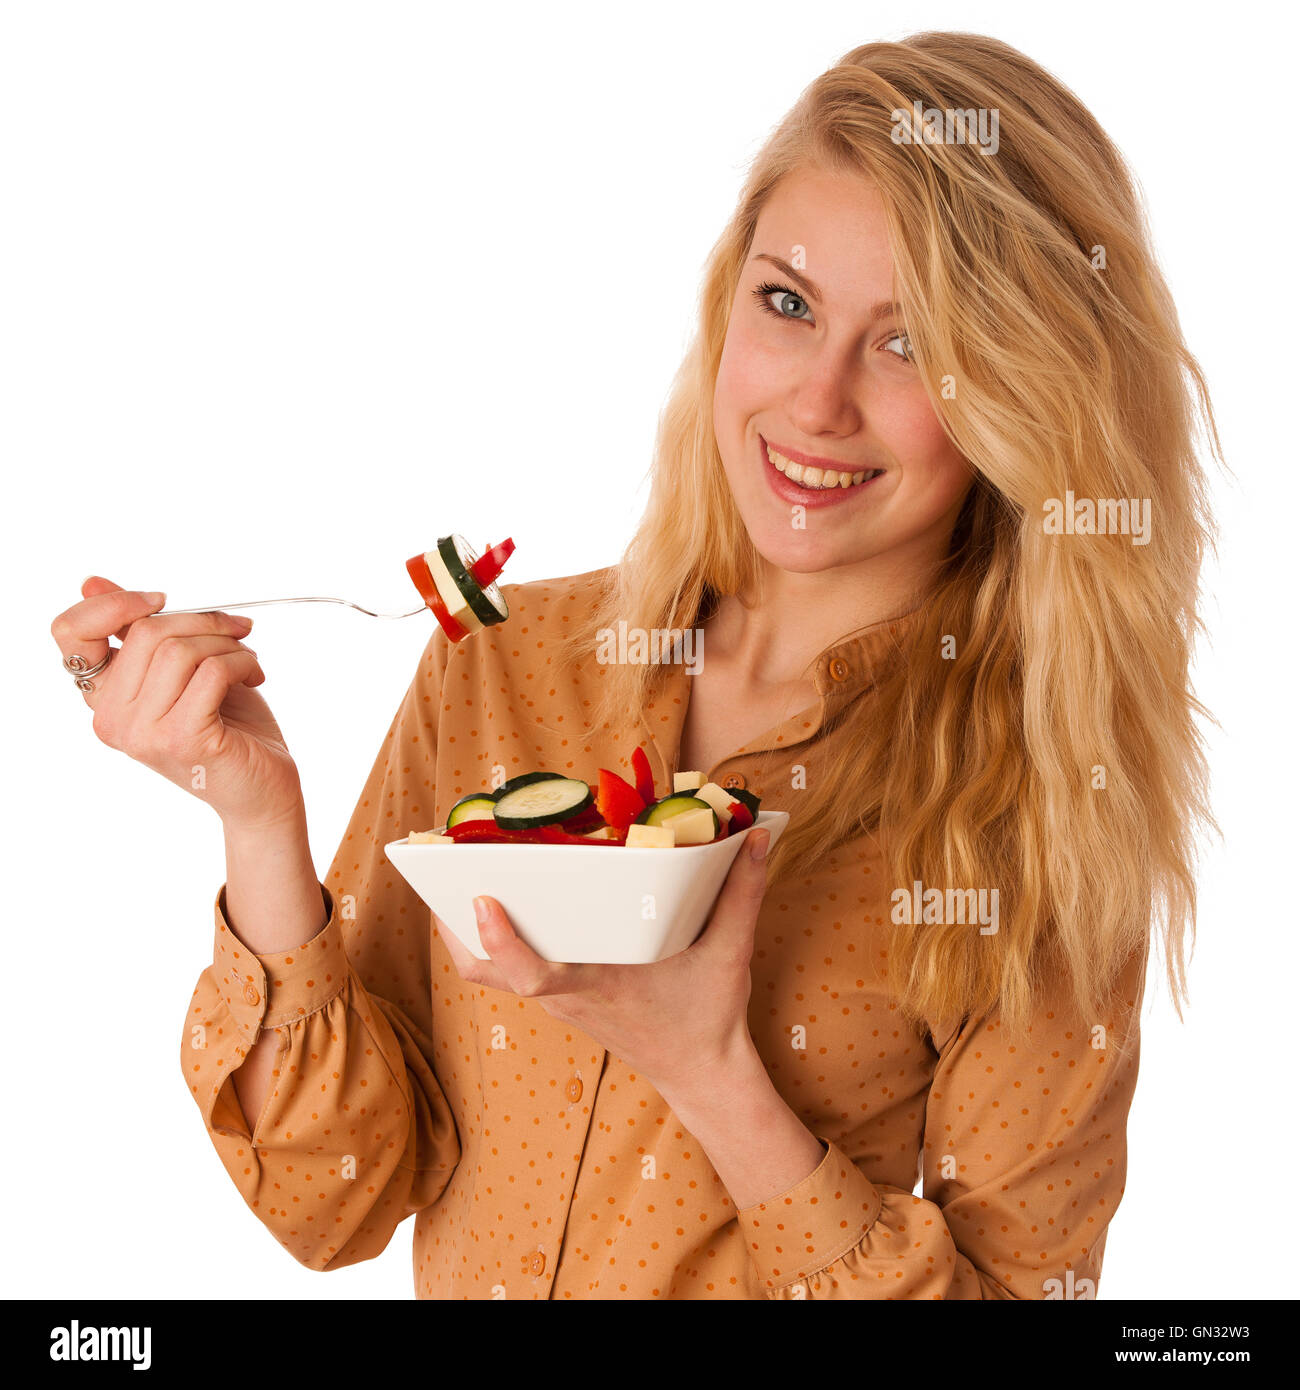 Très belle jeune femme blonde caucasienne mange une délicieuse salade comme un signe de saine alimentation isolated over white Banque D'Images